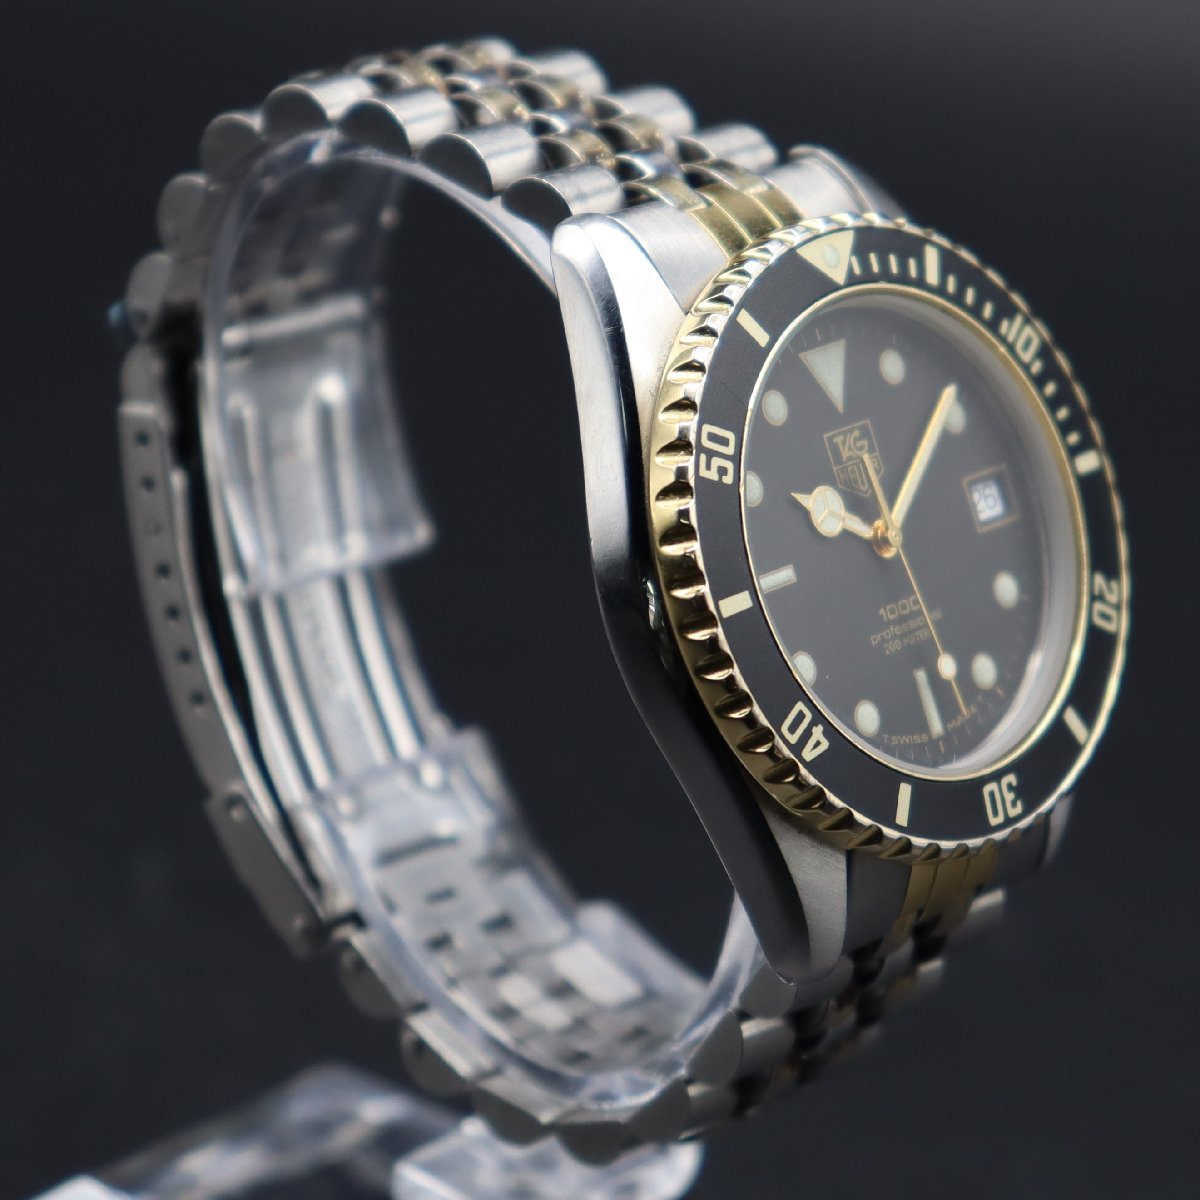 TAG HEUER タグホイヤー プロフェッショナル 1000 クォーツ 200M防水 980.020N 黒 コンビカラー デイト スイス製 純正ブレス メンズ腕時計_画像4